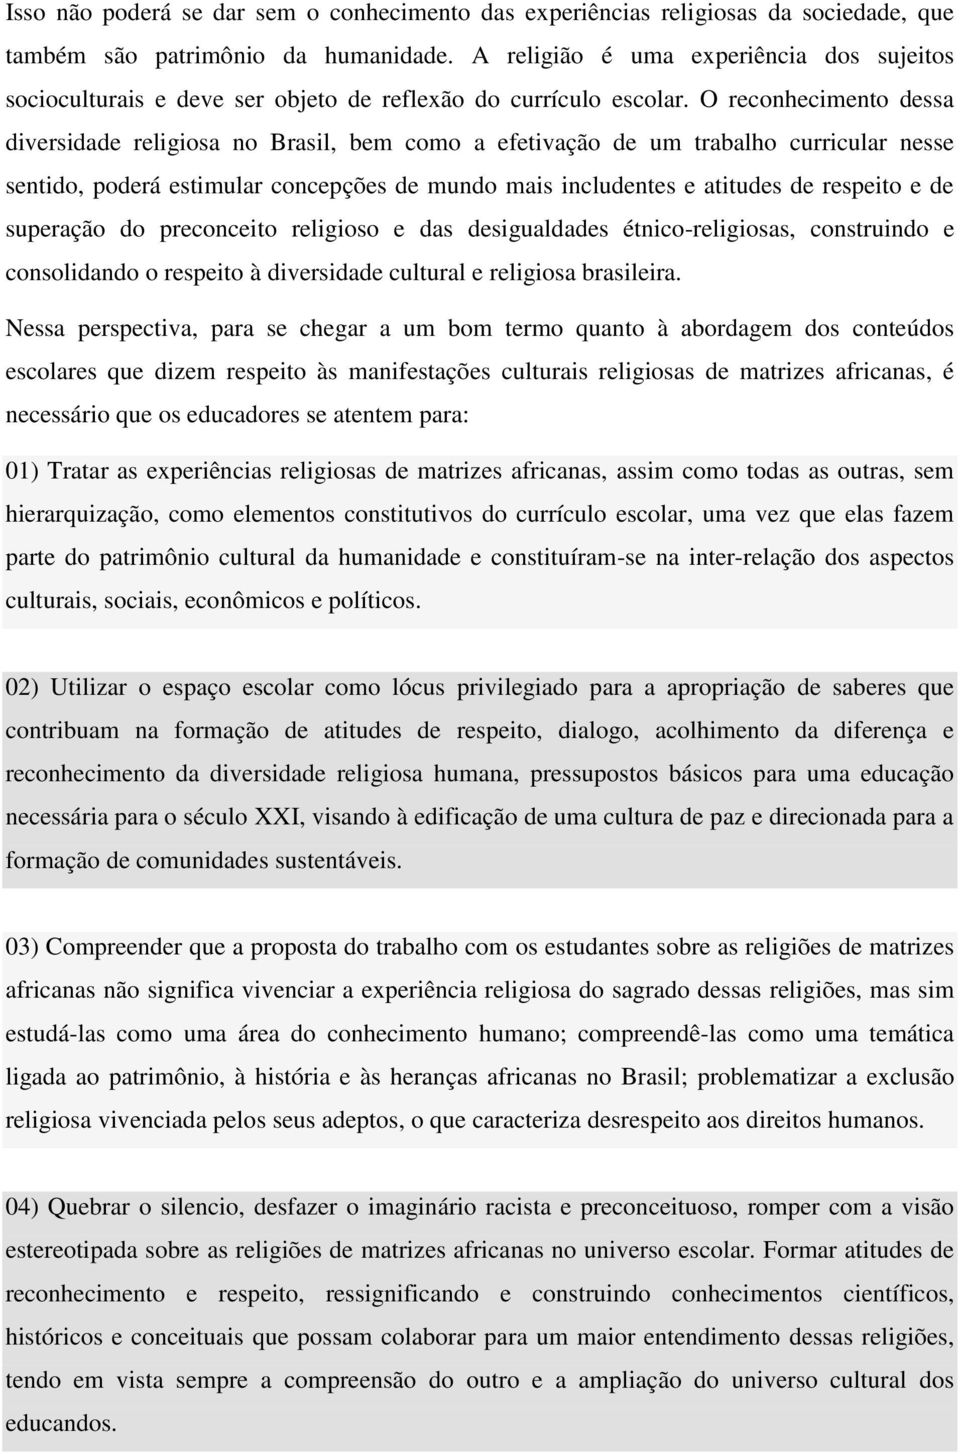 O reconhecimento dessa diversidade religiosa no Brasil, bem como a efetivação de um trabalho curricular nesse sentido, poderá estimular concepções de mundo mais includentes e atitudes de respeito e